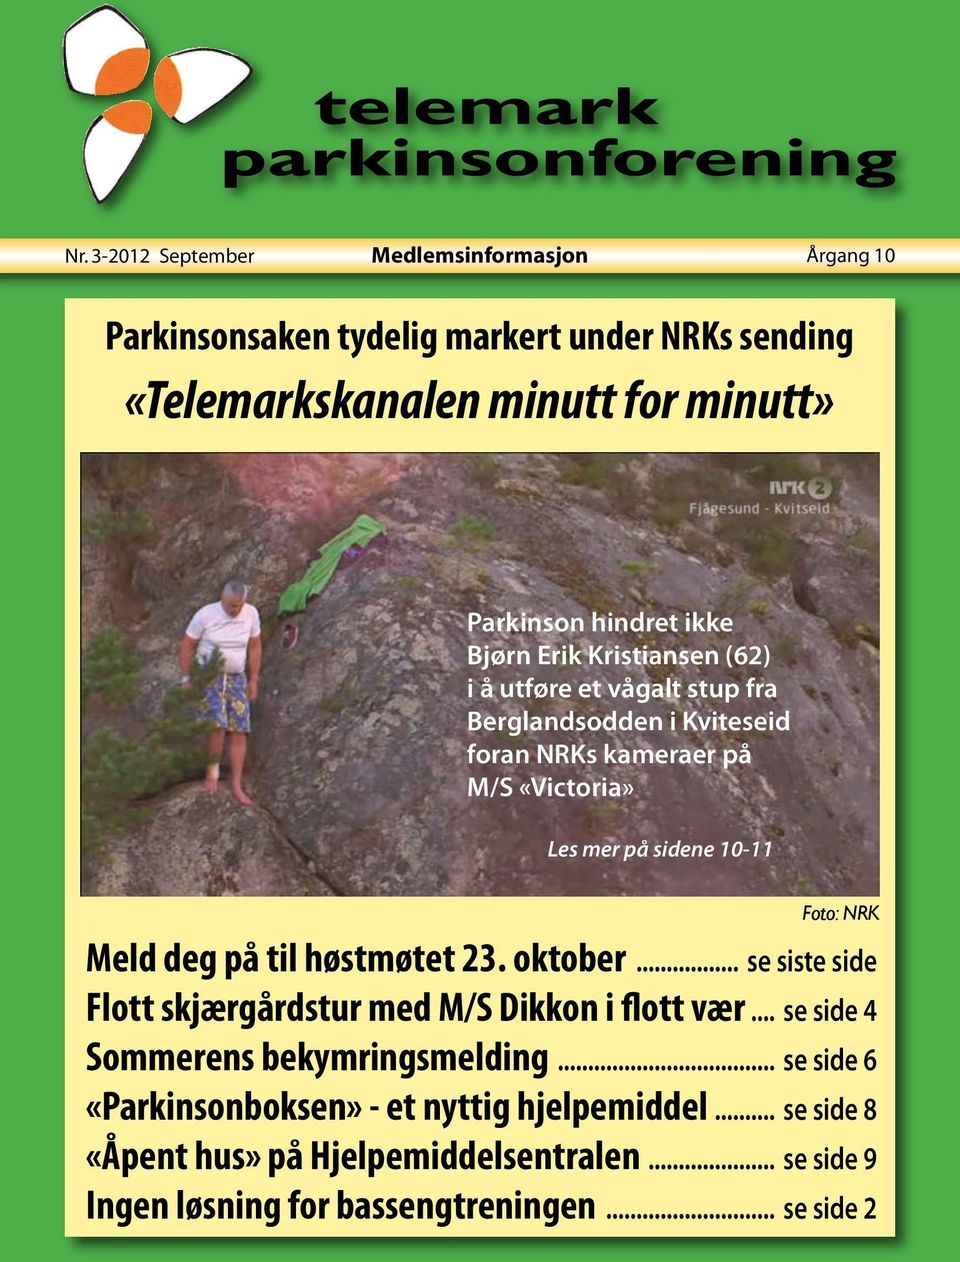 Foto: NRK Meld deg på til høstmøtet 23. oktober... se siste side Flott skjærgårdstur med M/S Dikkon i flott vær... se side 4 Sommerens bekymringsmelding.